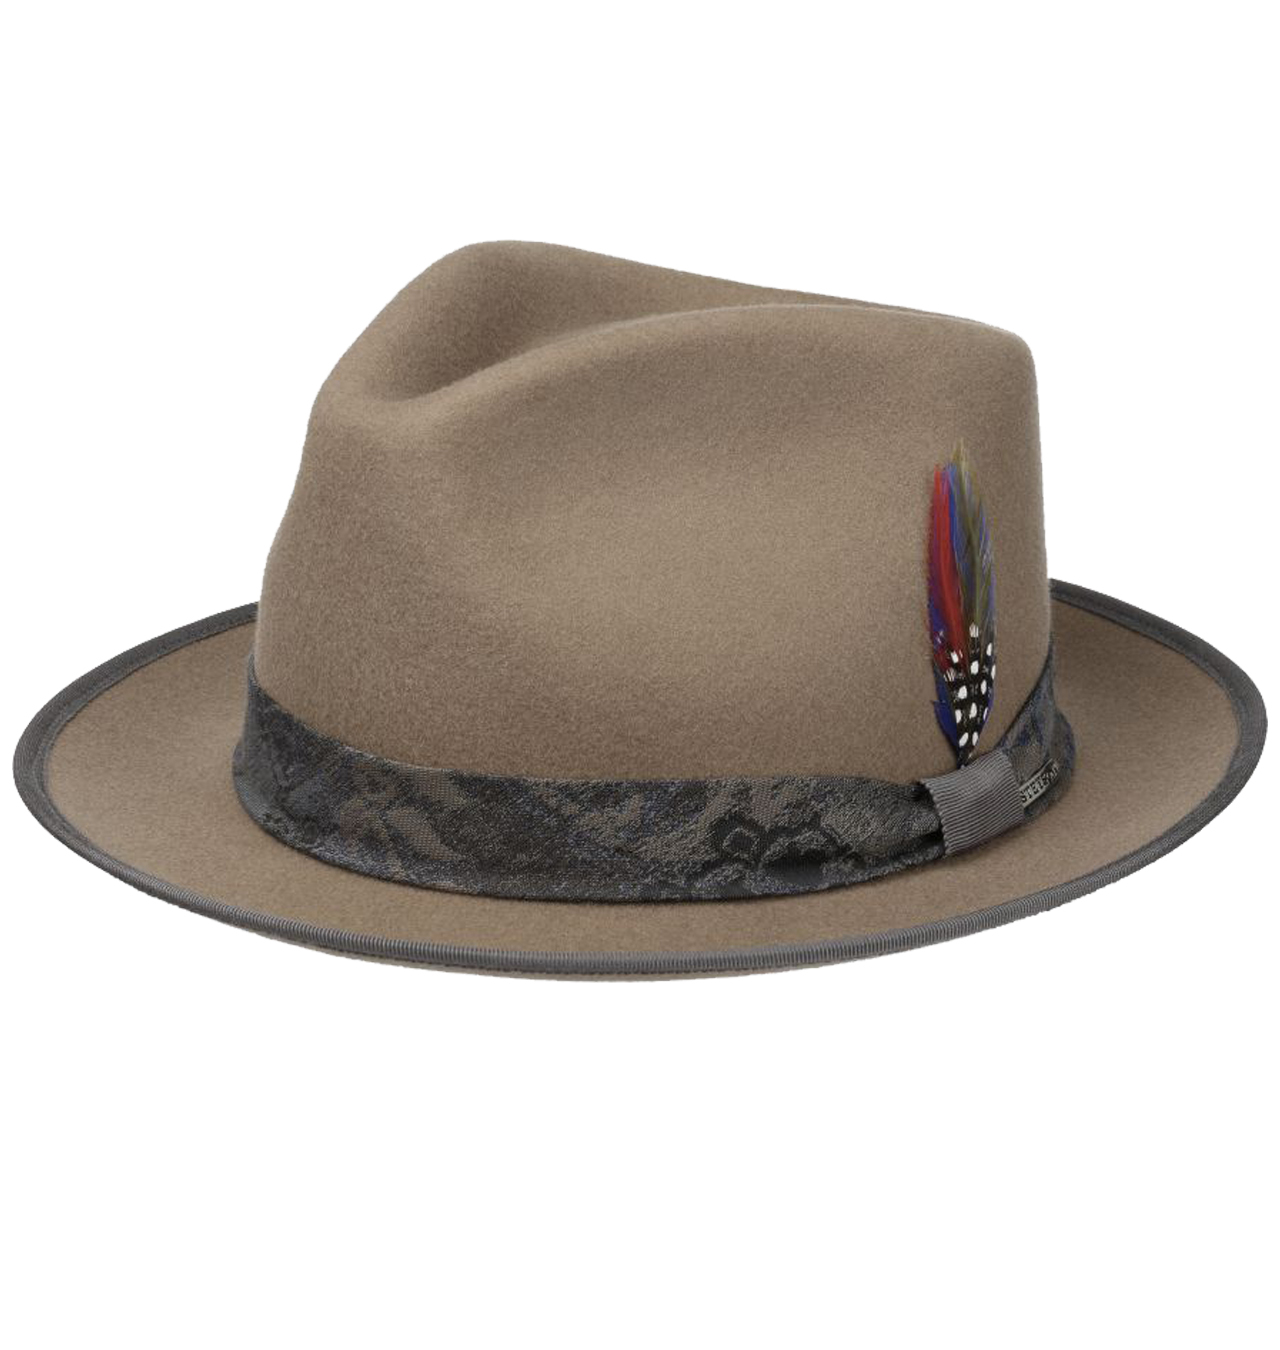 Stetson - Vandrick Fedora Wool Hat - Beige